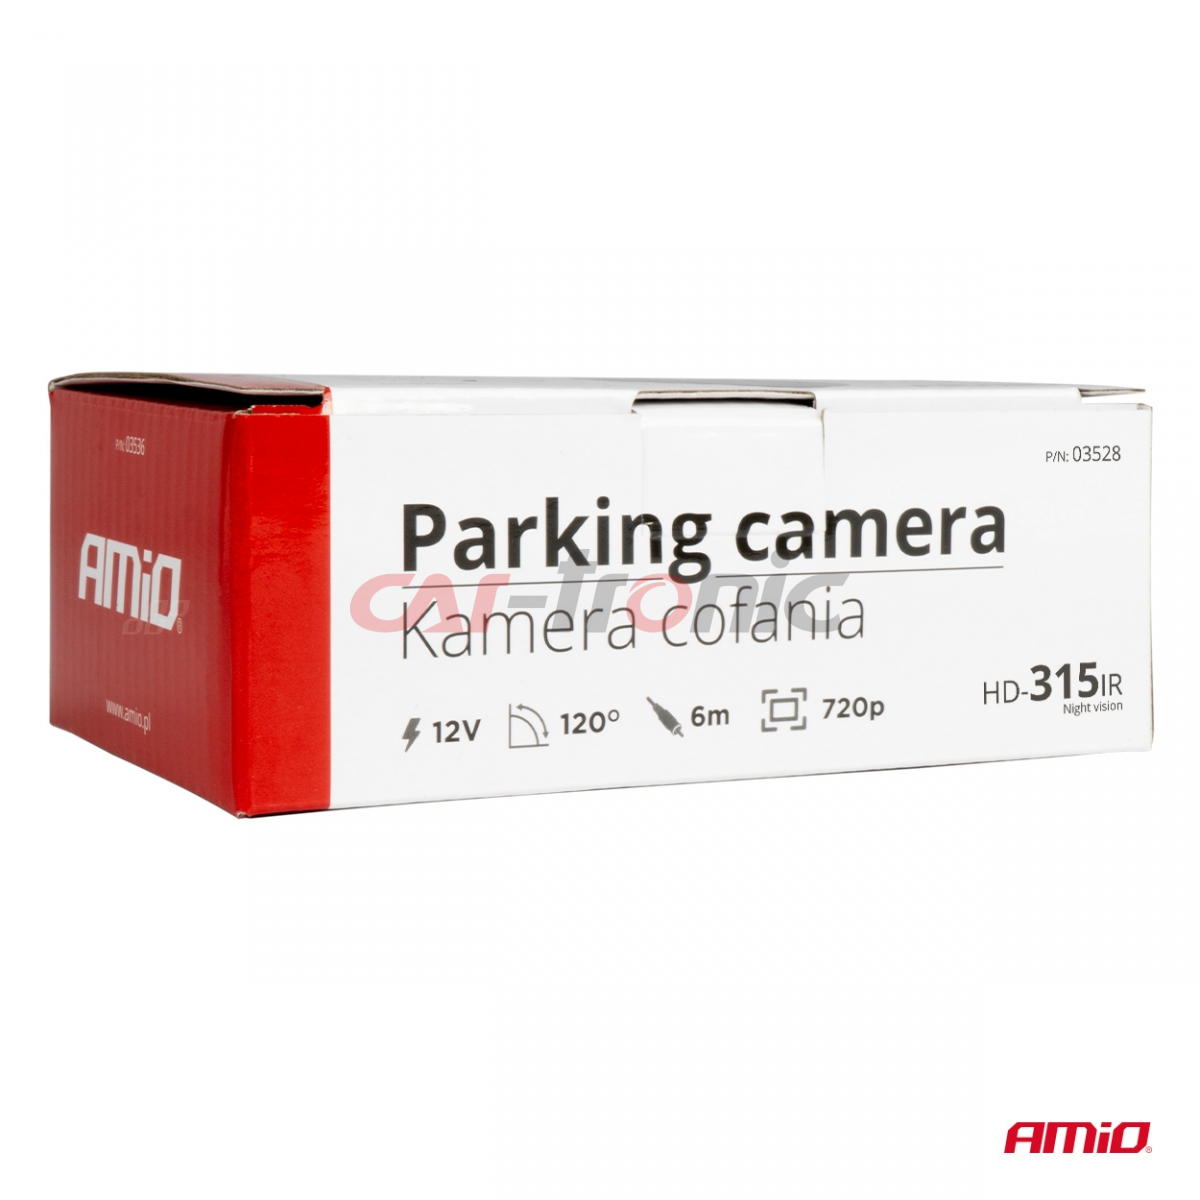 Kamera cofania parkowania HD-315 IR 12v 720p AMIO-03528